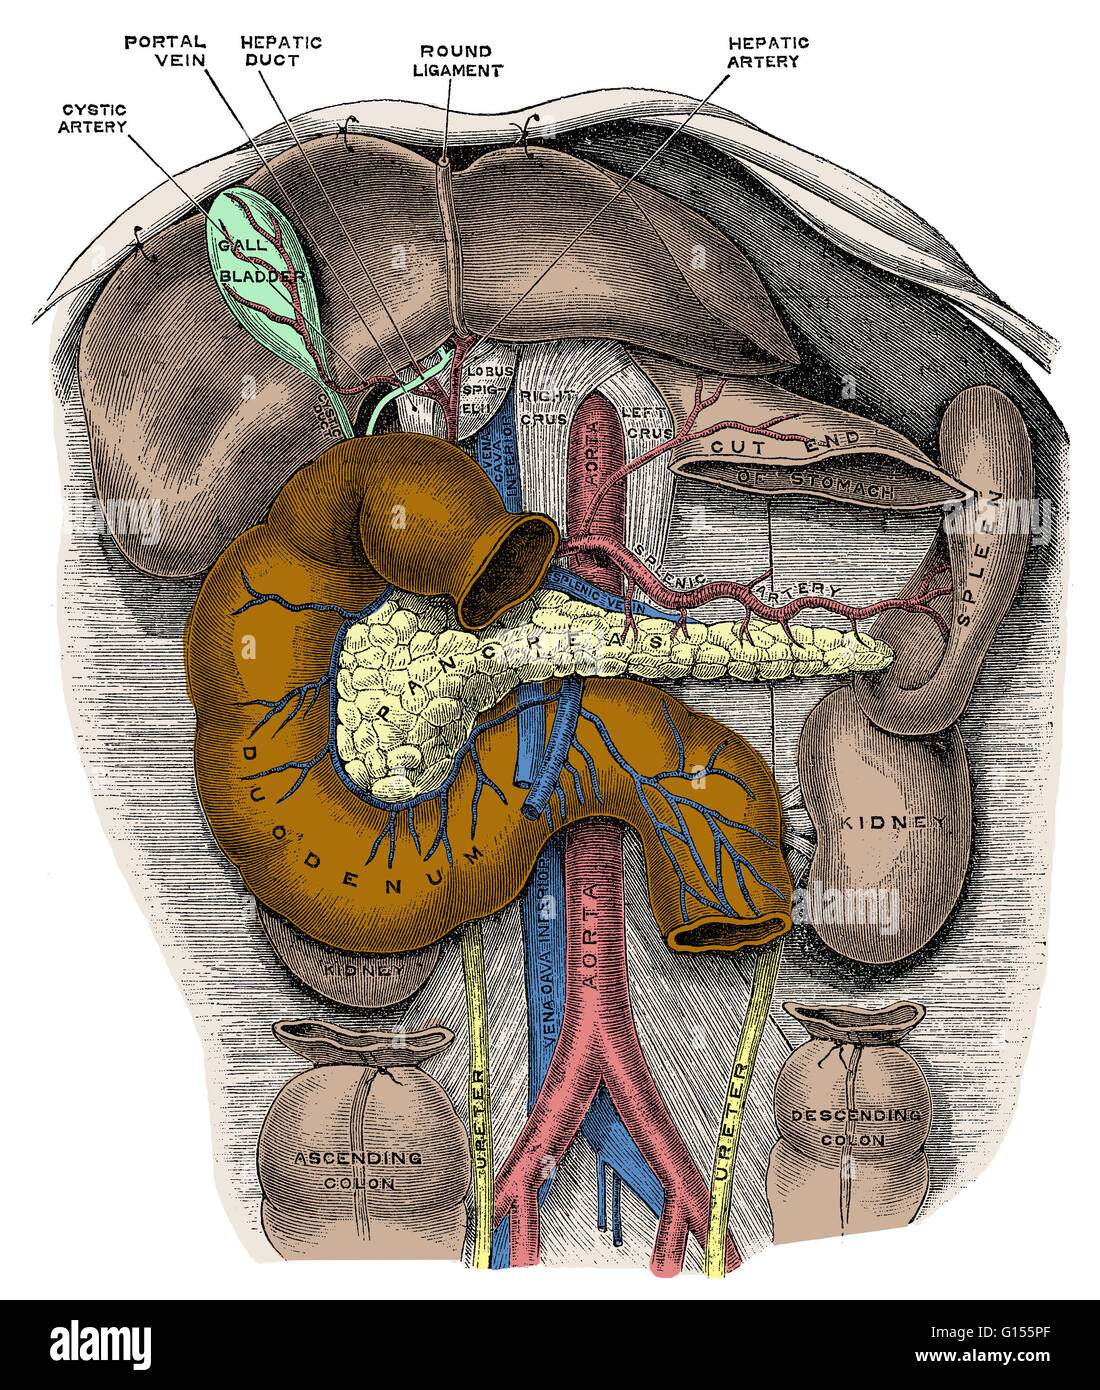 Disección del abdomen muestra específicamente el duodeno, la primera sección del intestino delgado. El duodeno es un tubo que conecta el estómago con el yeyuno (la sección media del intestino delgado). Esta es una ilustración anatómica histórico Foto de stock